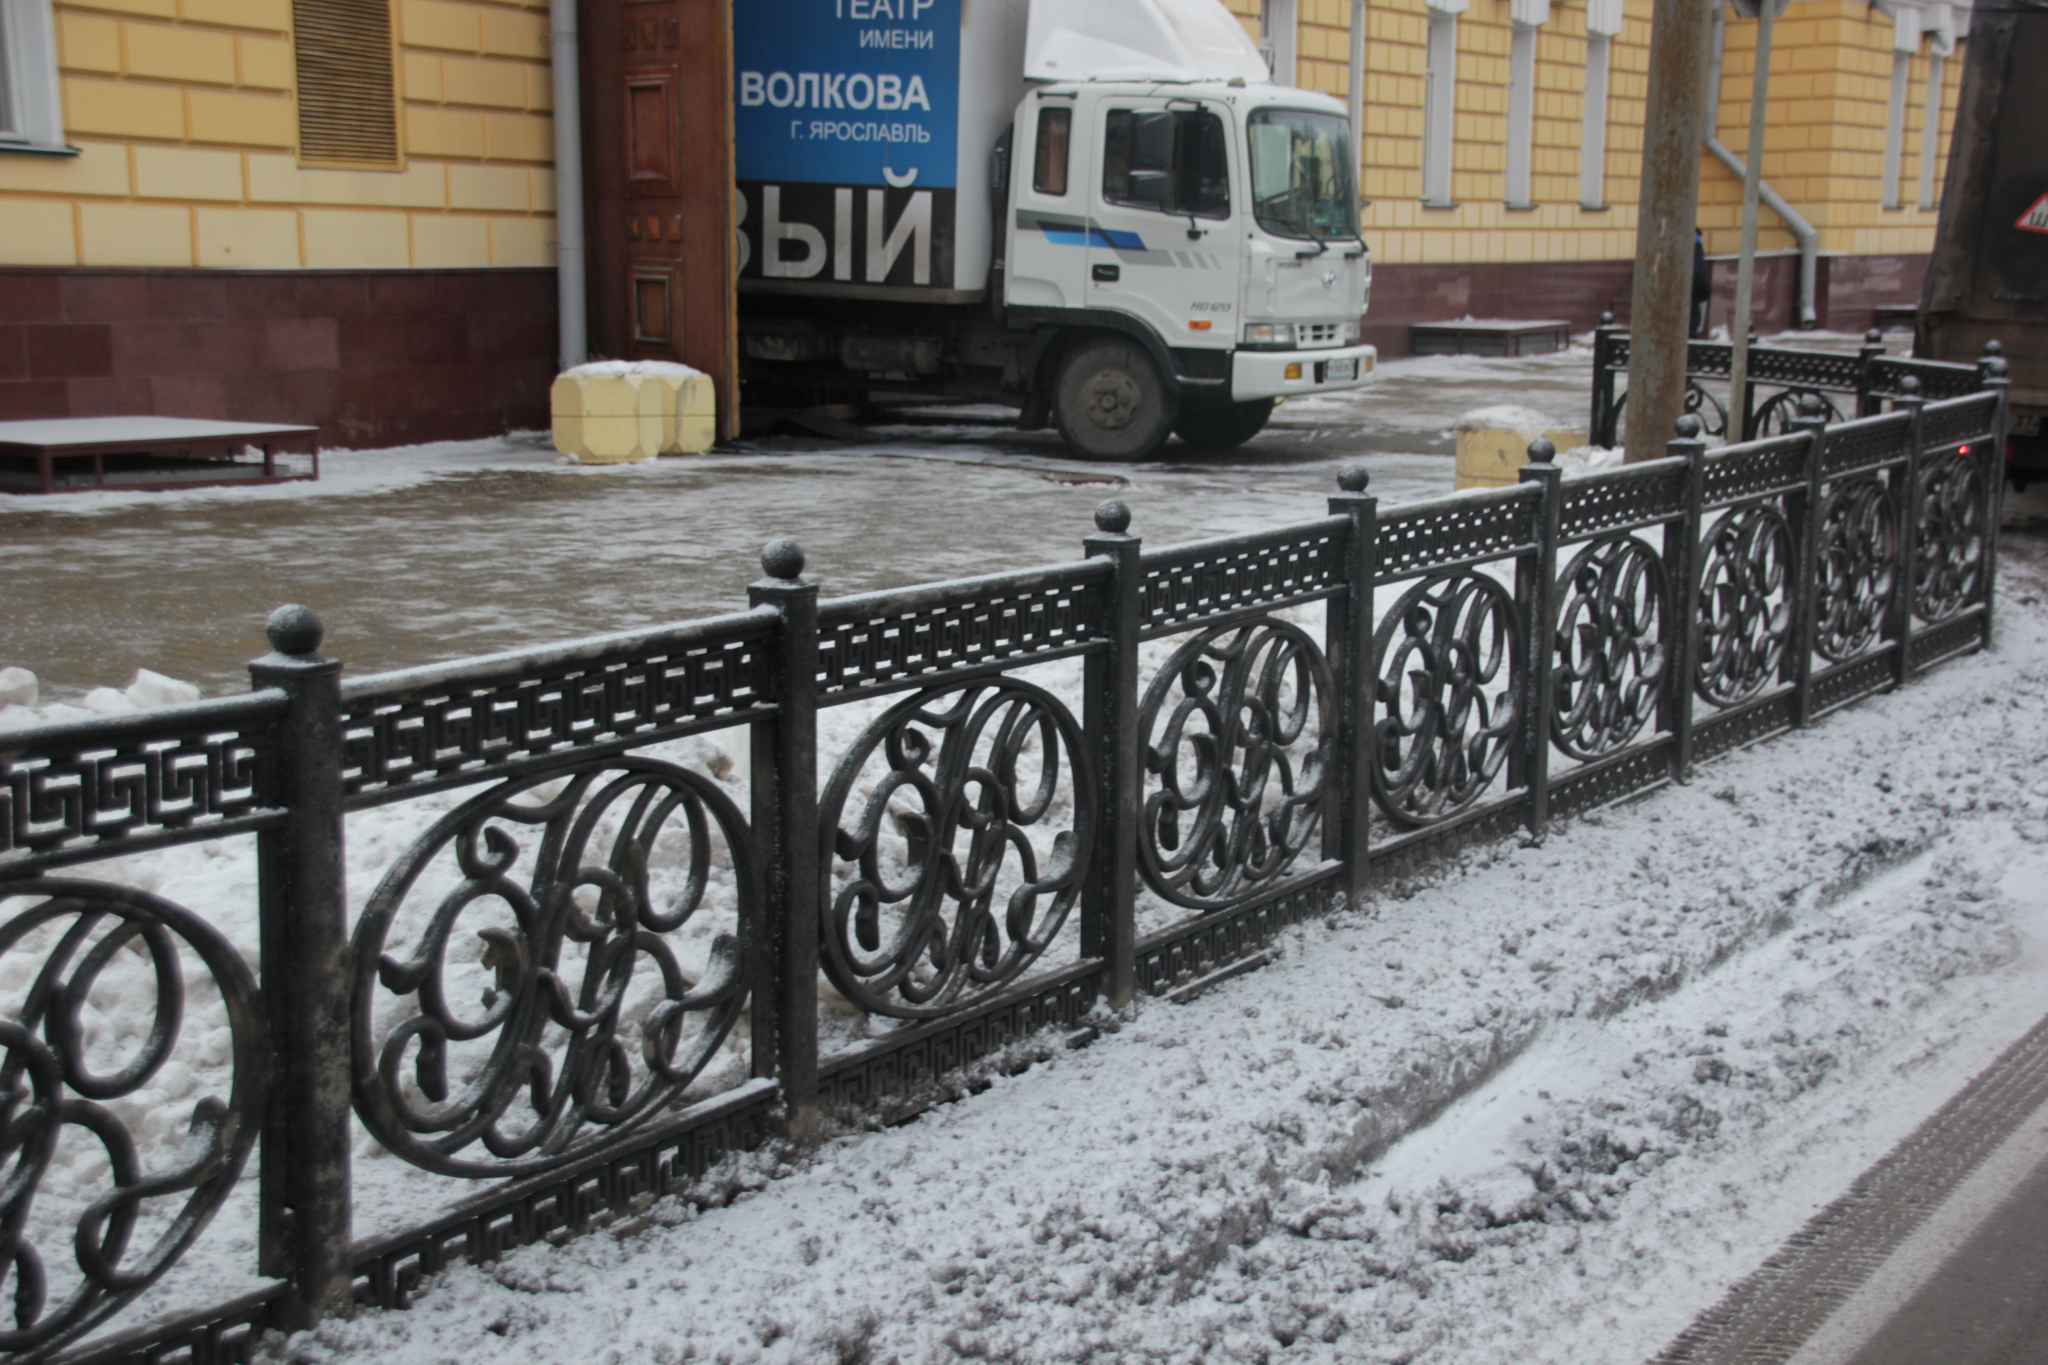 В Ярославле возле театра появилась ограда с инициалами Федора Волкова